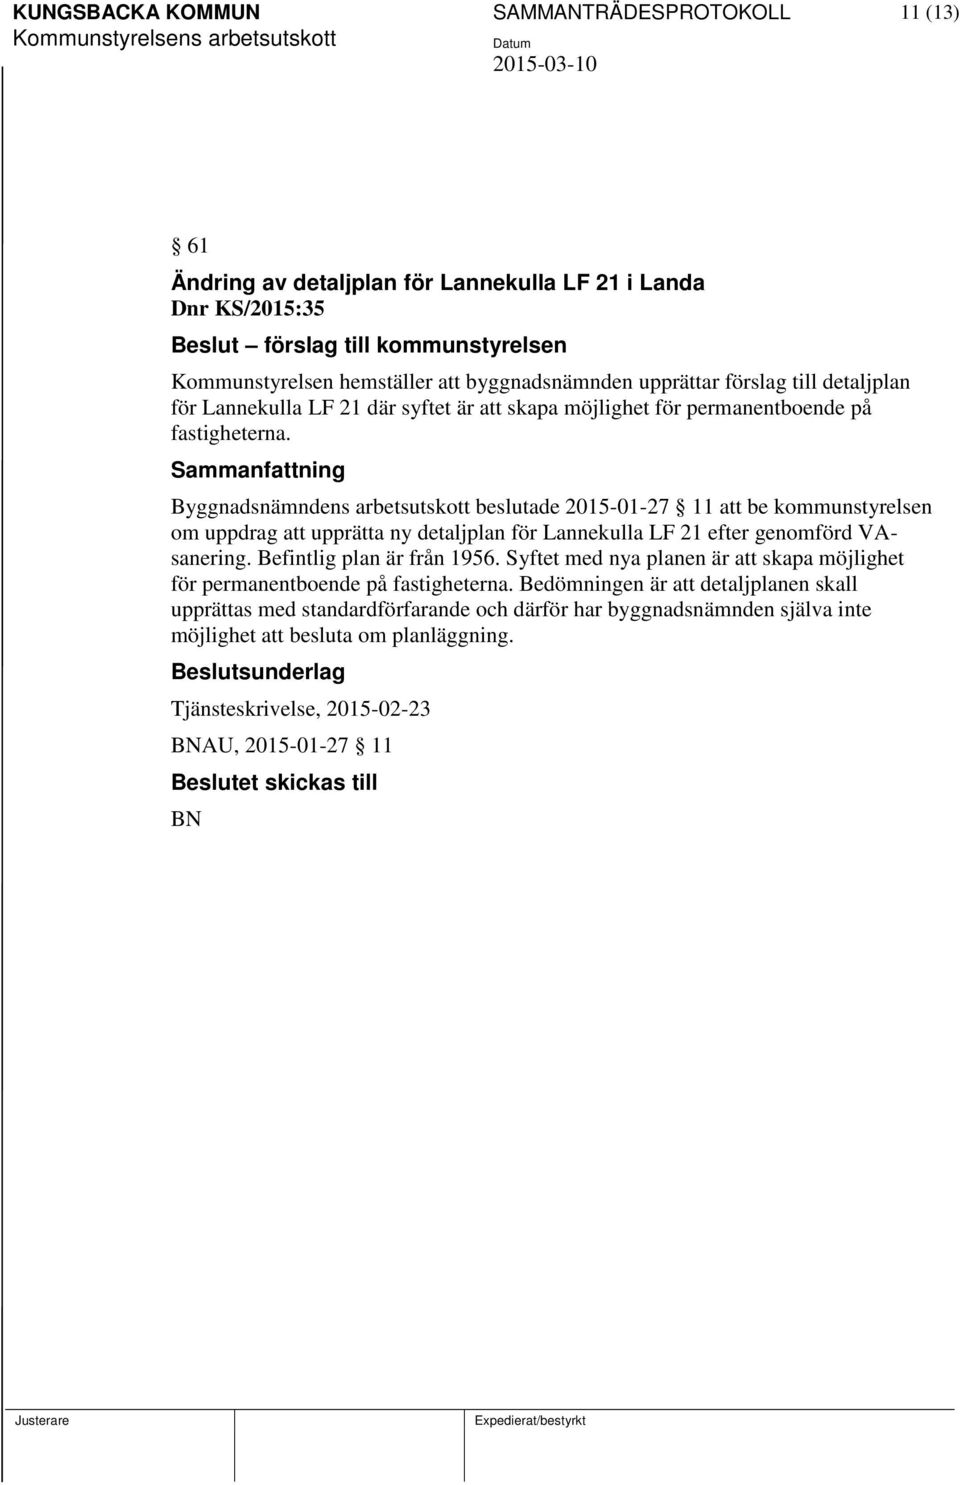 Byggnadsnämndens arbetsutskott beslutade 2015-01-27 11 att be kommunstyrelsen om uppdrag att upprätta ny detaljplan för Lannekulla LF 21 efter genomförd VAsanering. Befintlig plan är från 1956.